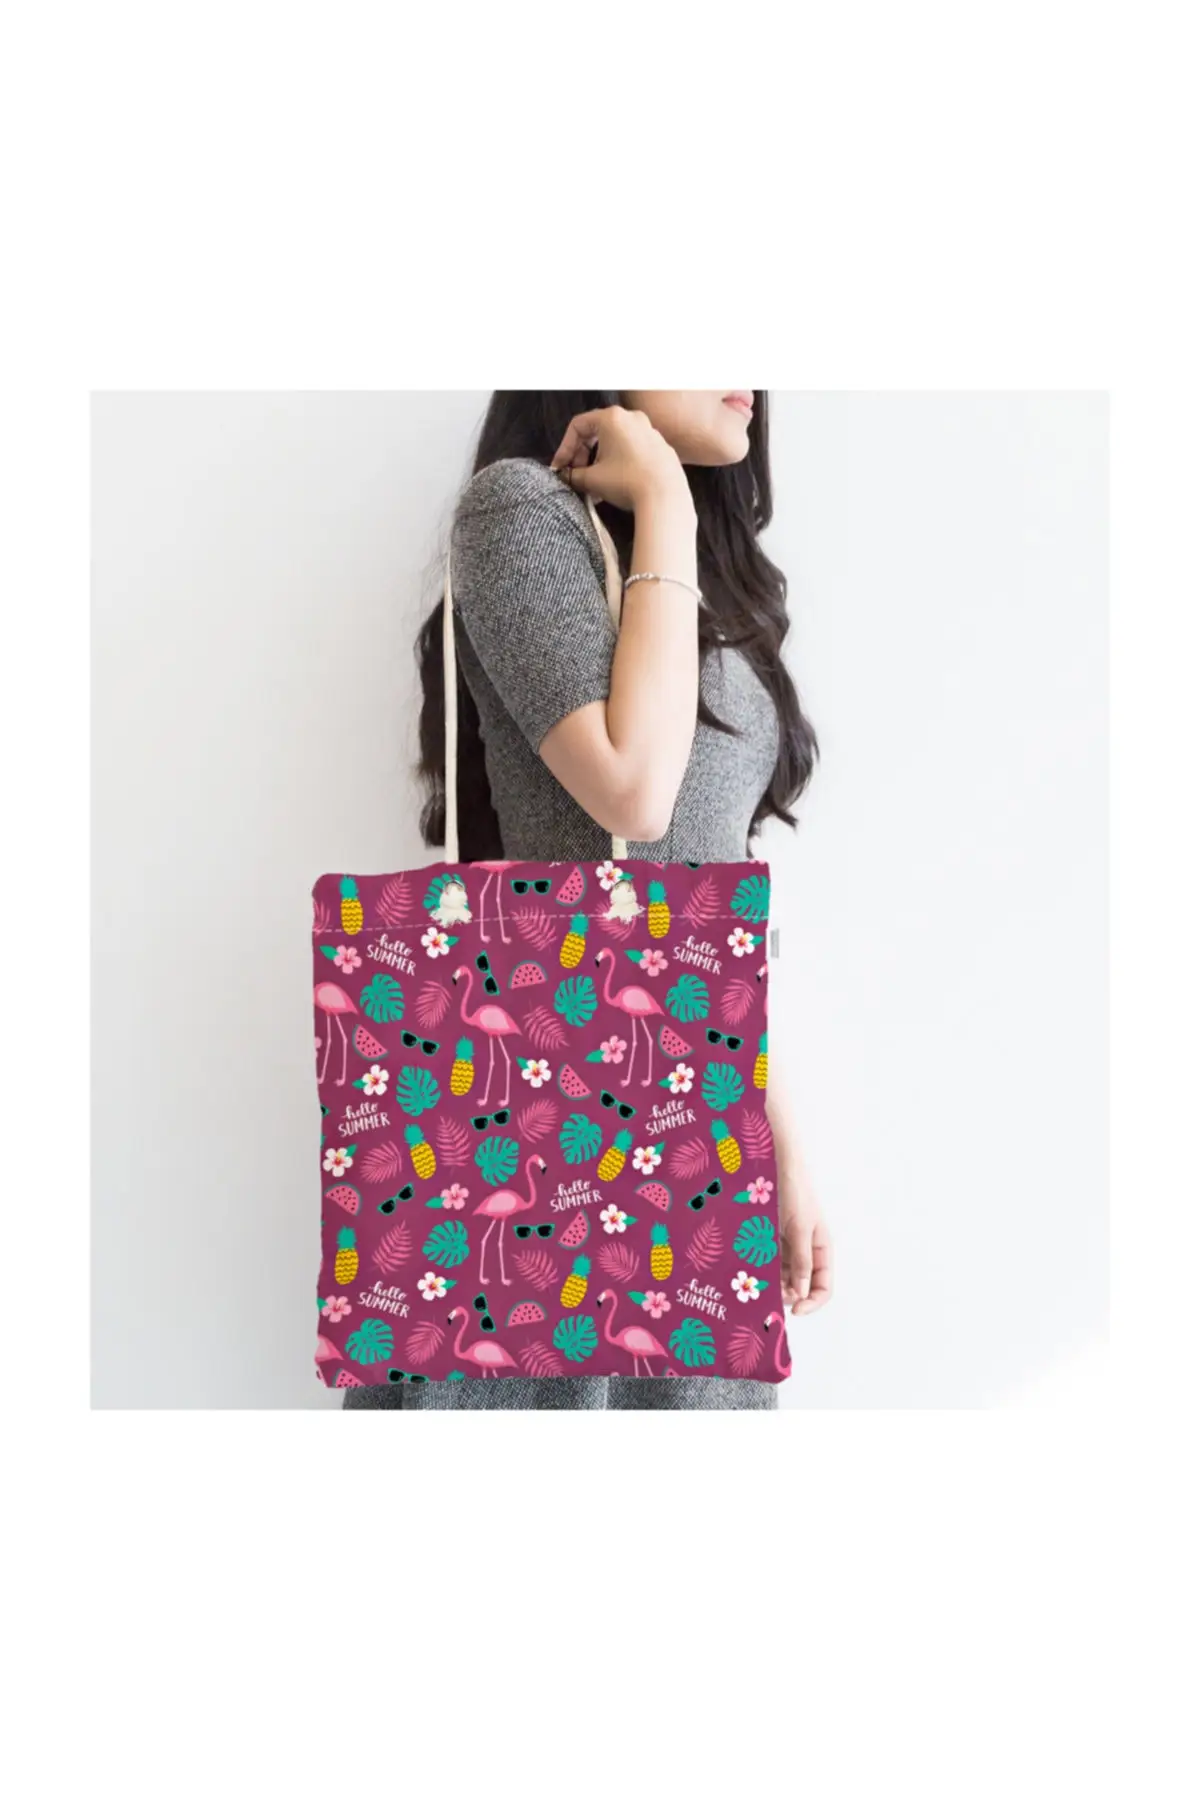 

Женская пляжная сумка Hello Summer, летняя сумка-тоут с цифровым принтом на молнии на фиолетовом фоне, летние сумки для покупок